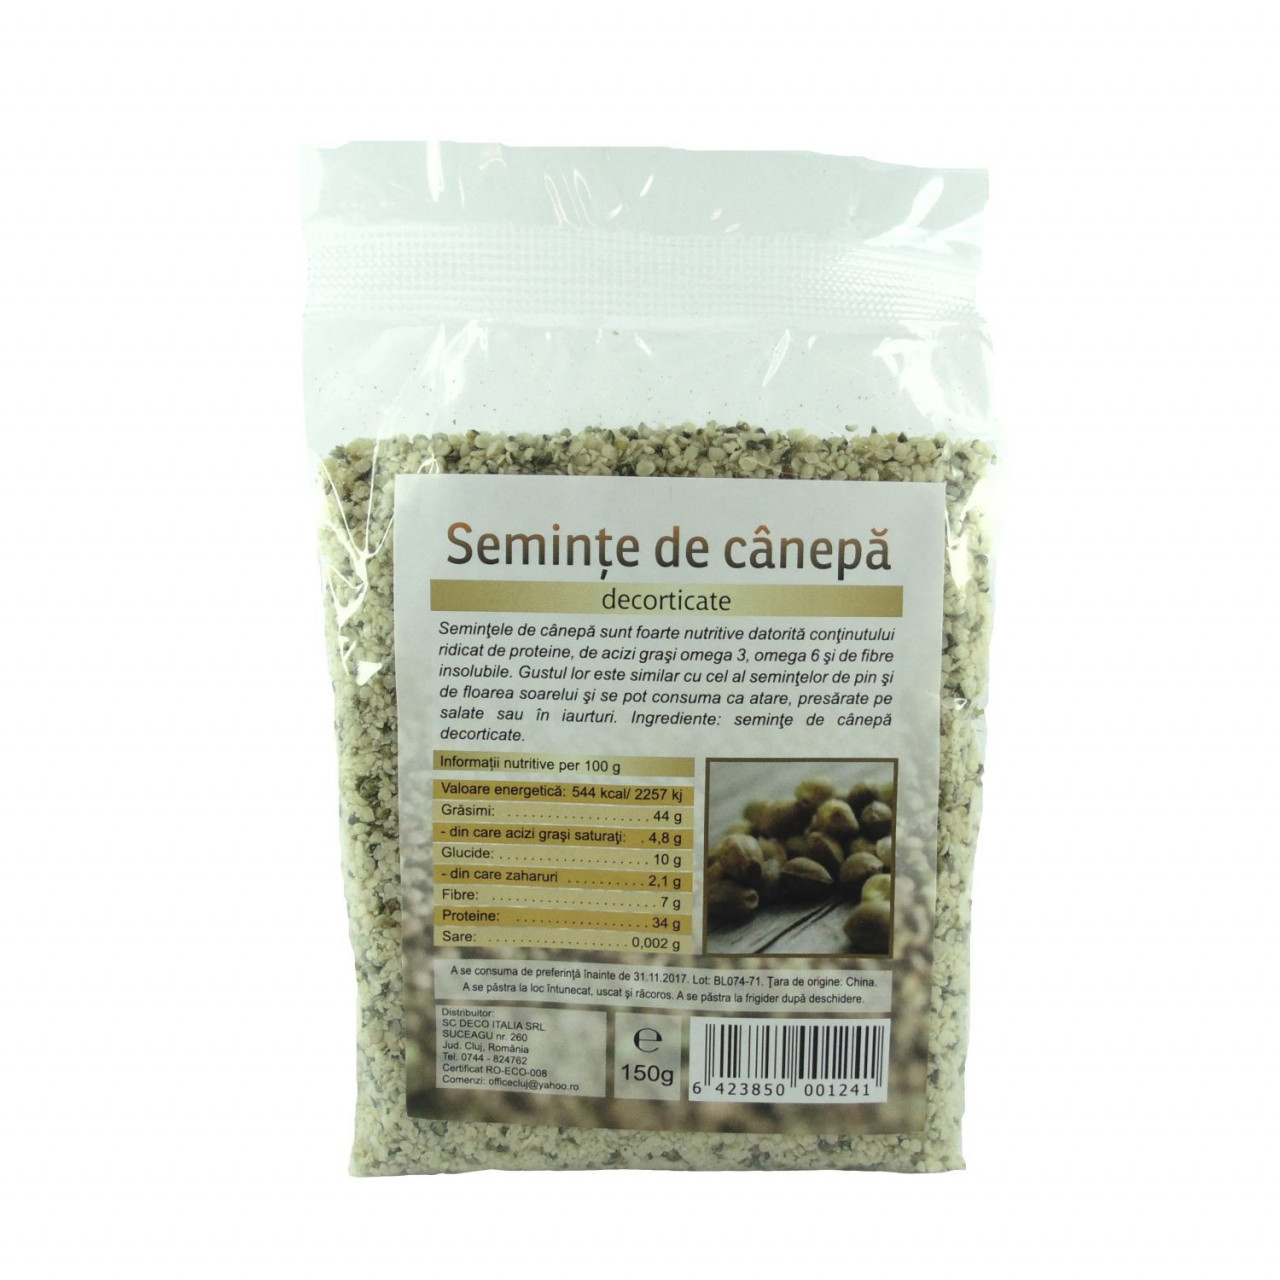 Seminte de canepa decorticate - 150 g